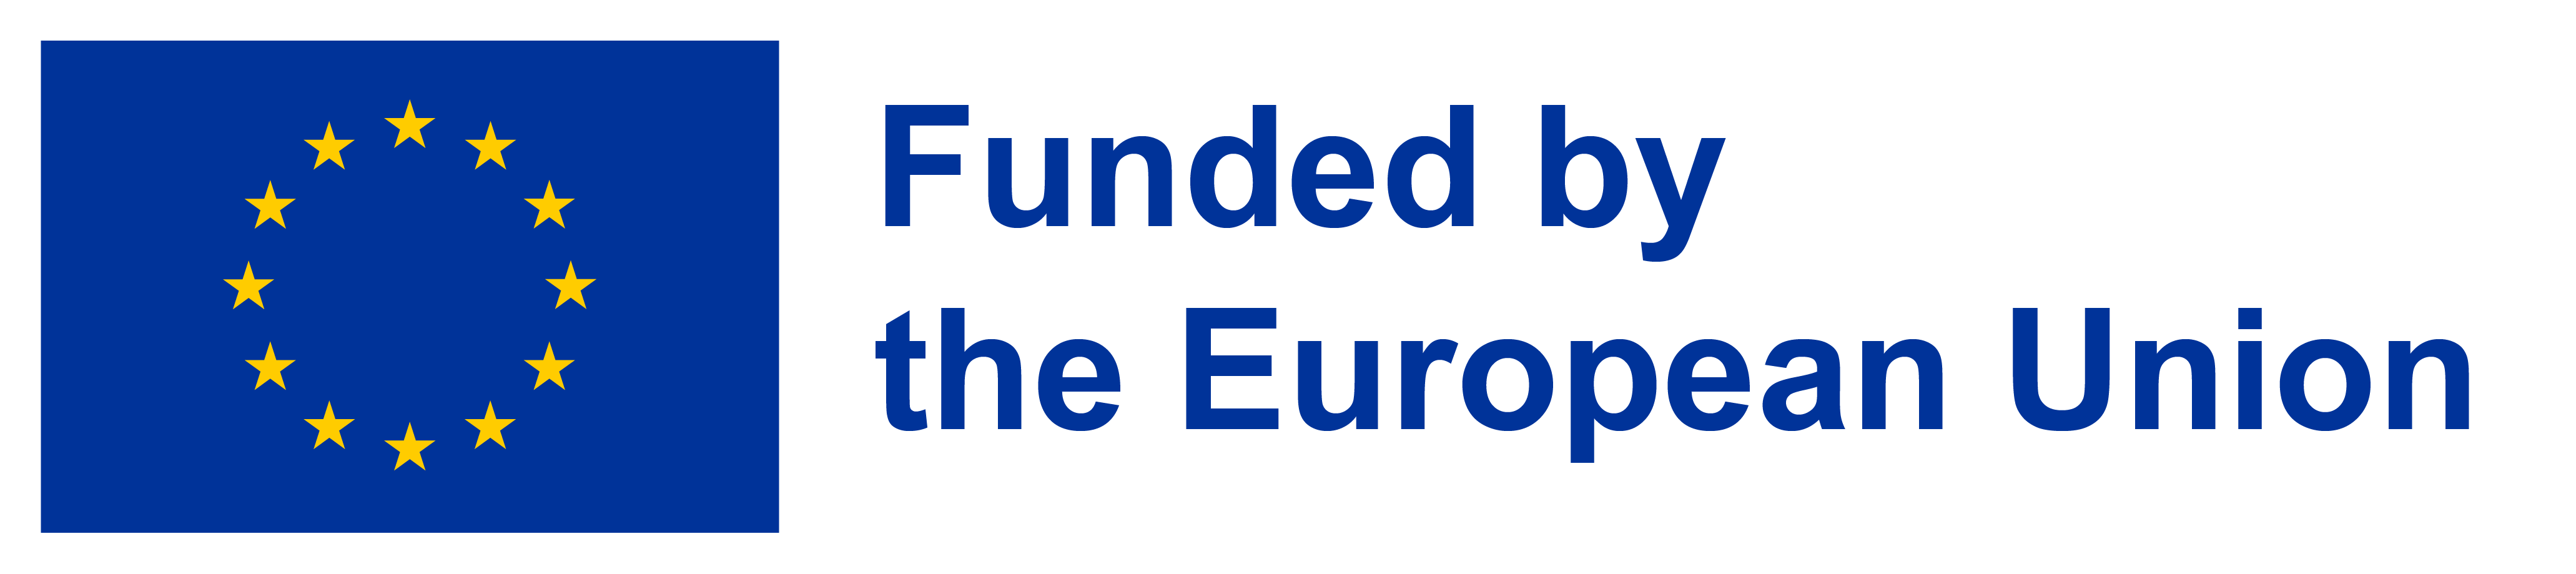 Logga för EU-finansiering